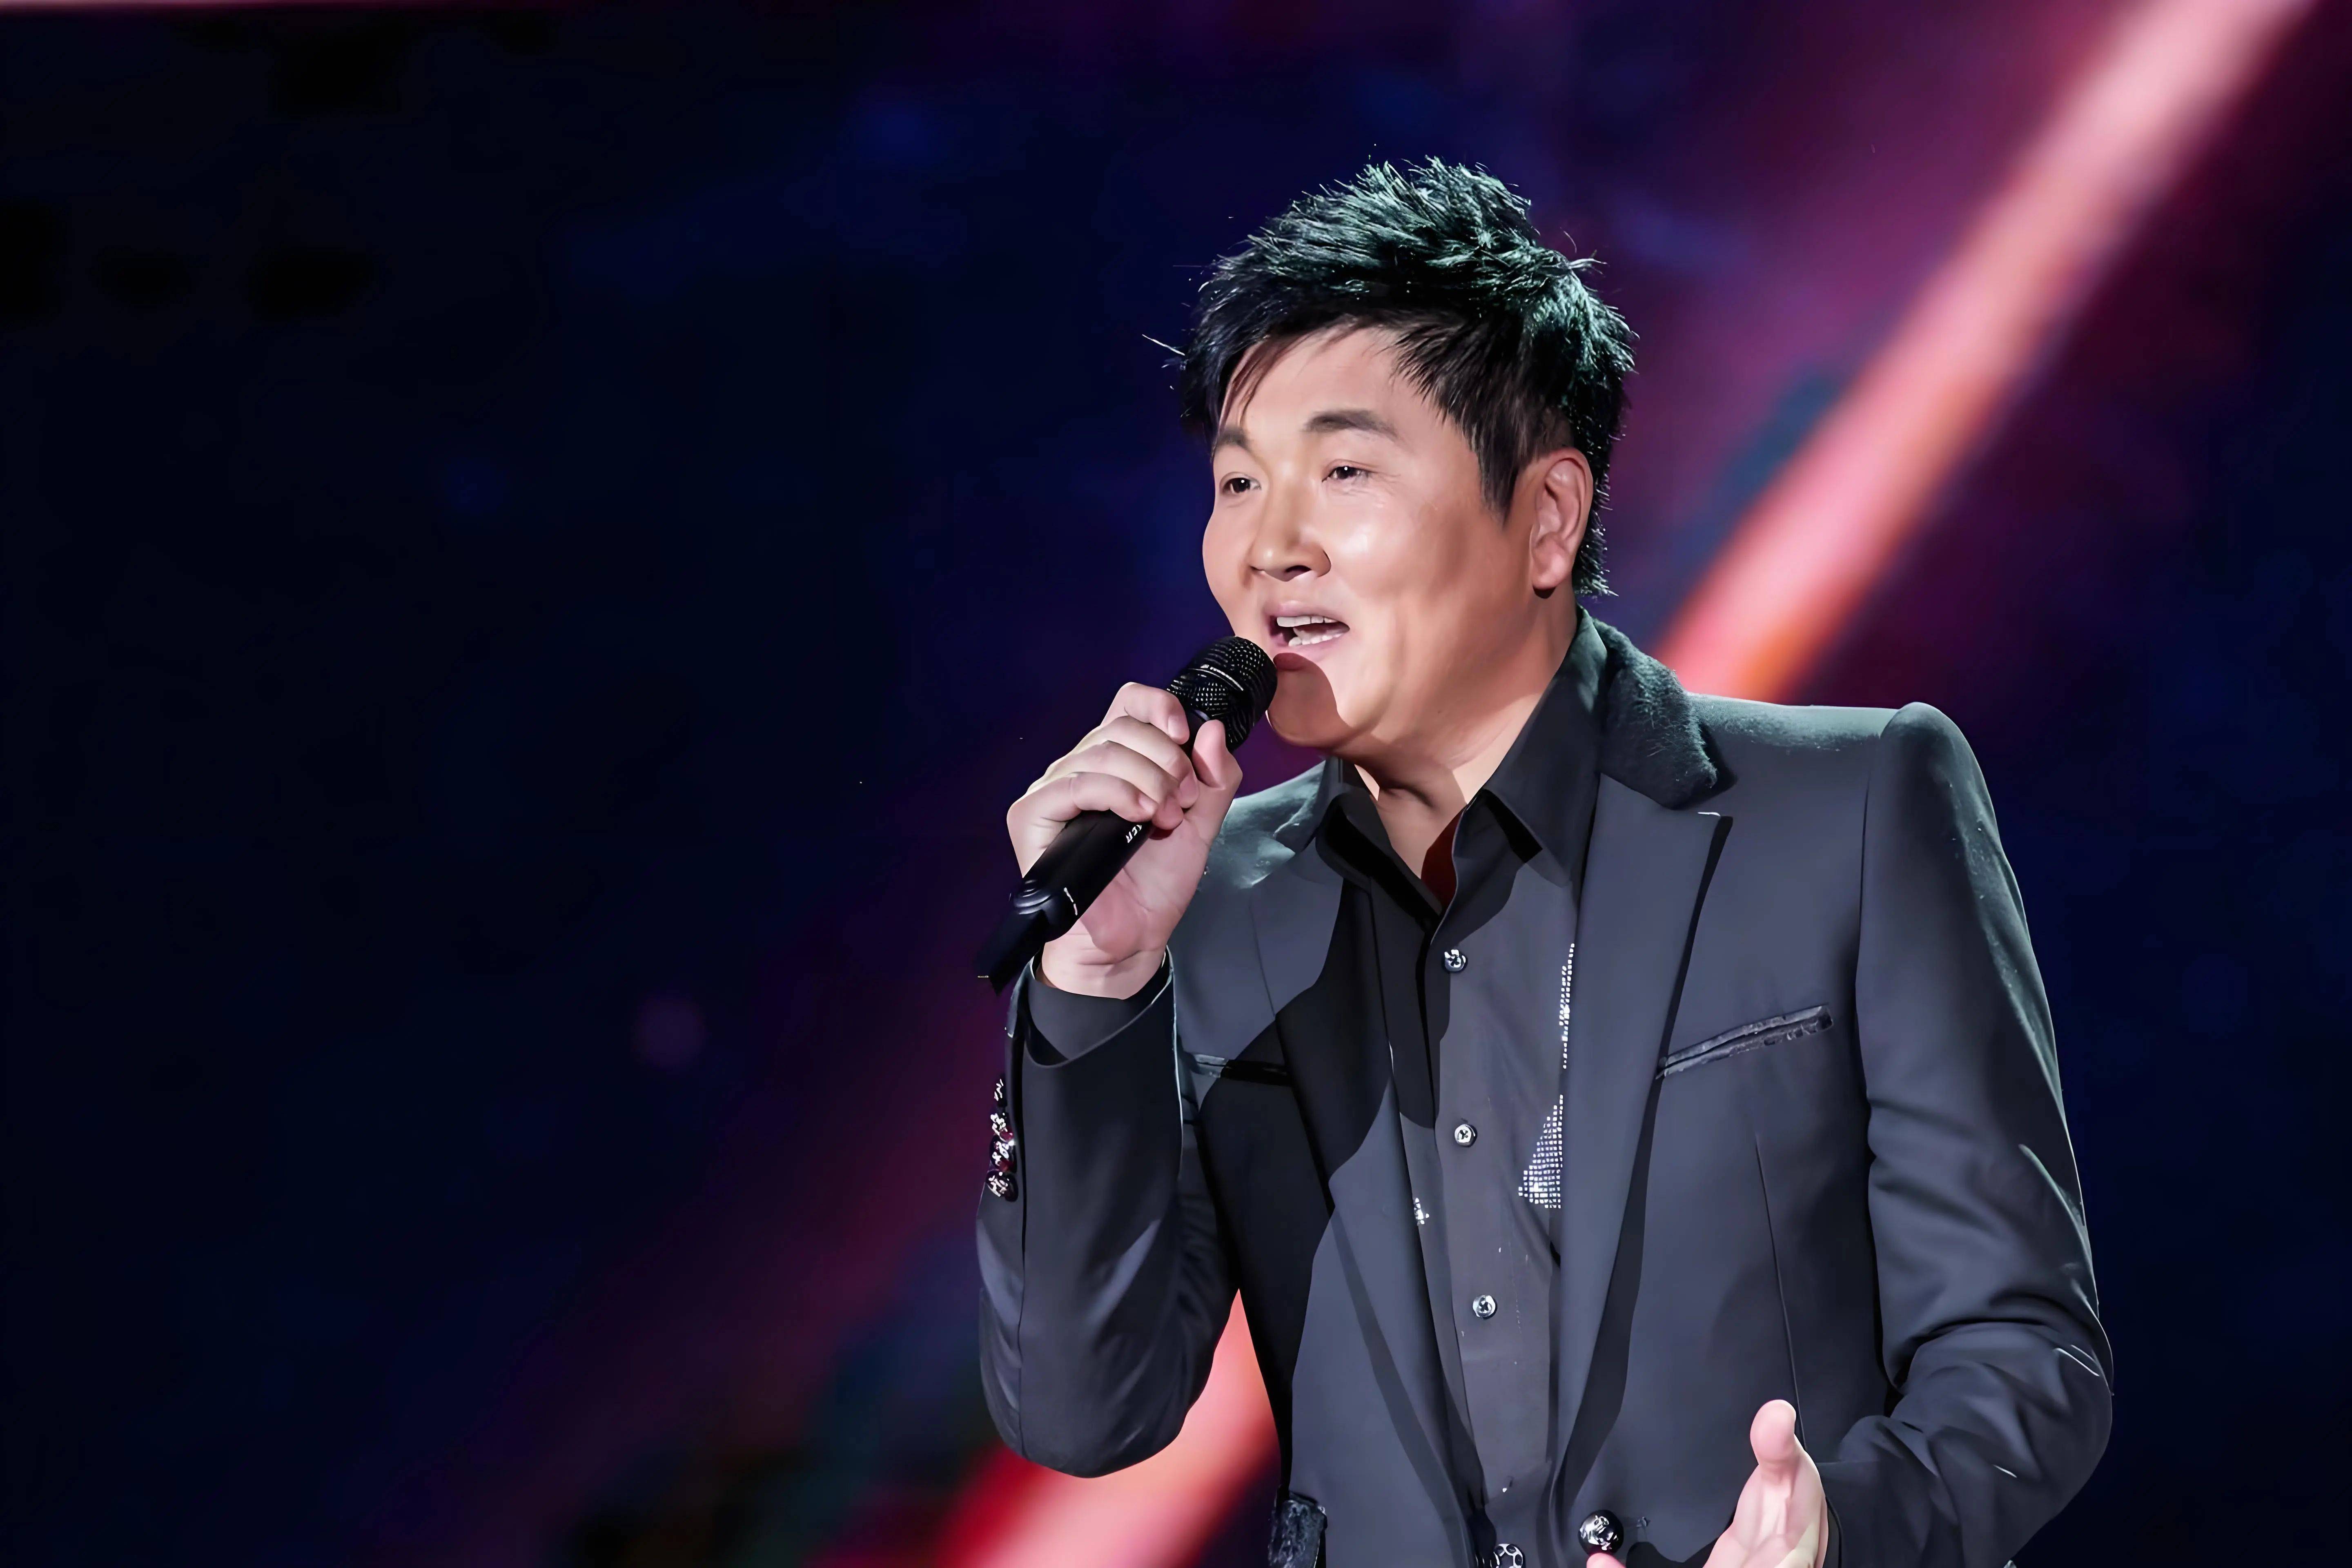 《歌手2024》中,孙楠勇夺冠军,但湖南卫视的表现确实令人不满